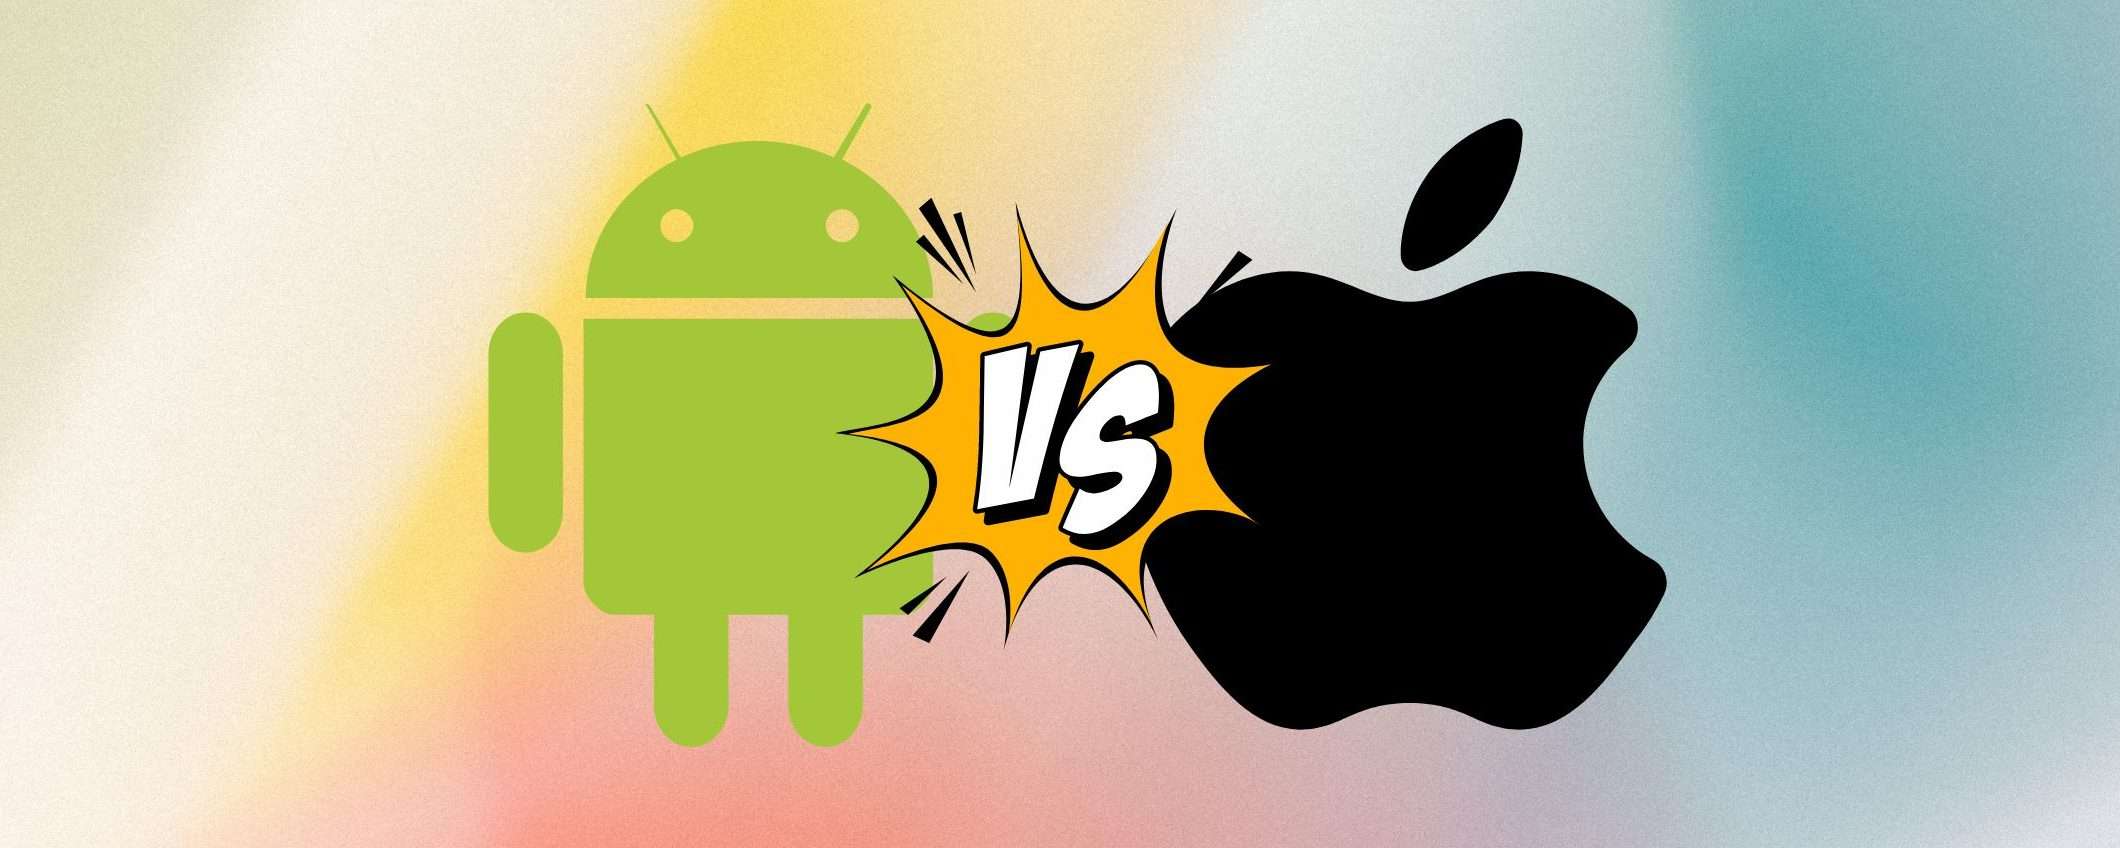 Android è meglio di iOS? Cosa dice il capo di Instagram